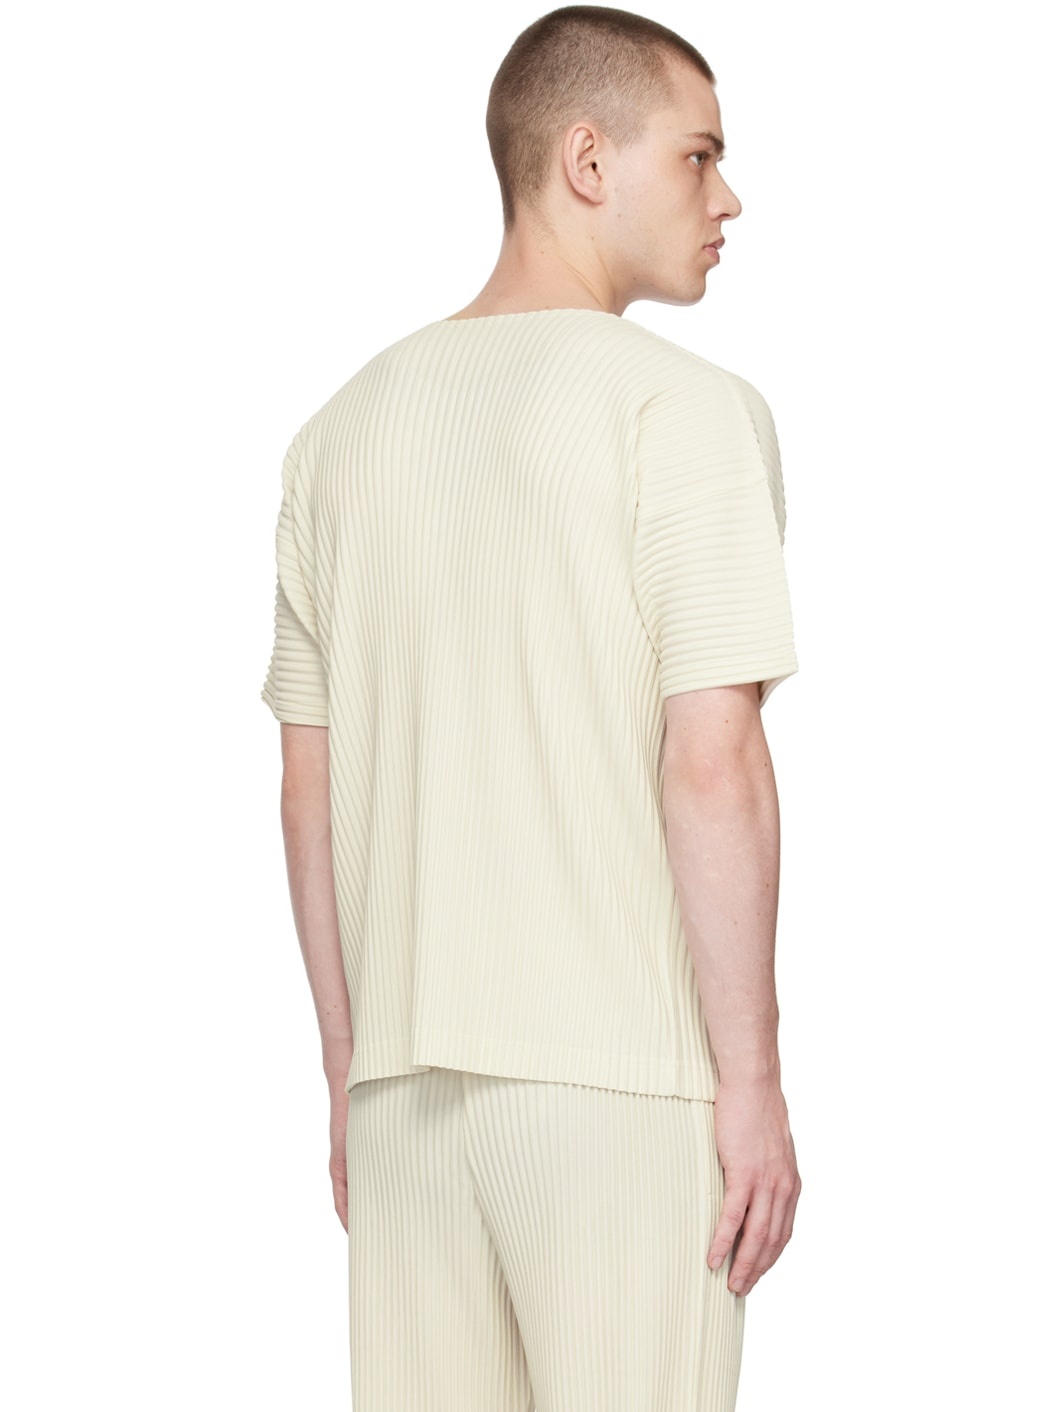 White Color Pleats T-Shirt - 3